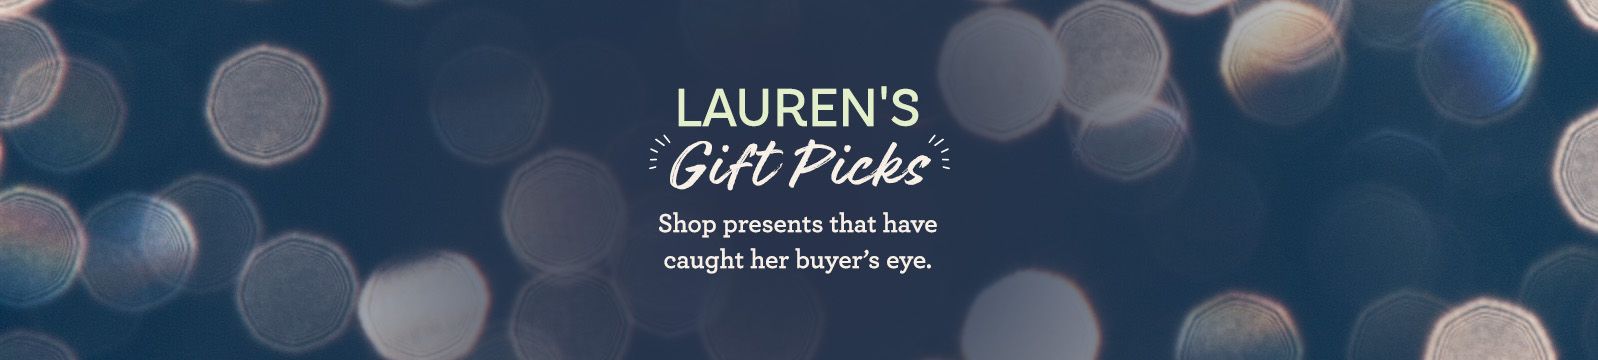 Lauren's Gift Picks Shop presents that have caught her buyer's eye.